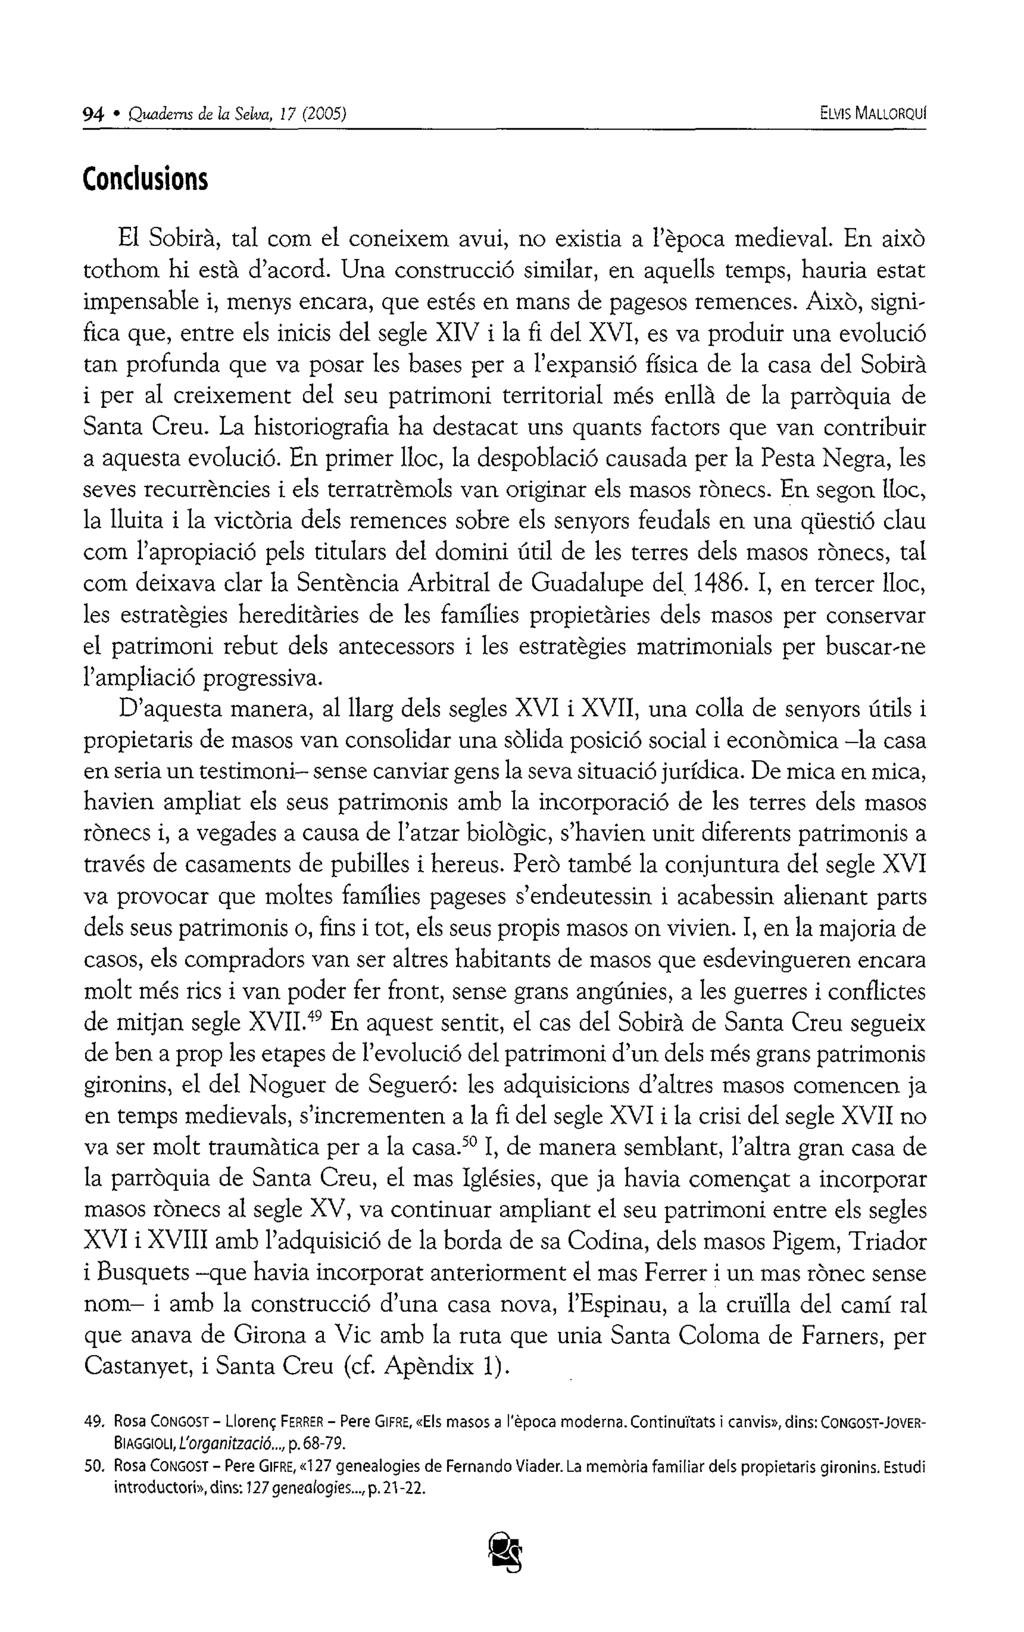 94 Qmdems de la Selva, 17 (2005) ELVIS MALLORQUI Conclusions EI Sobirà, tal com el coneixem avui, no existia a l'època medieval. En això tothom hi està d'acord.